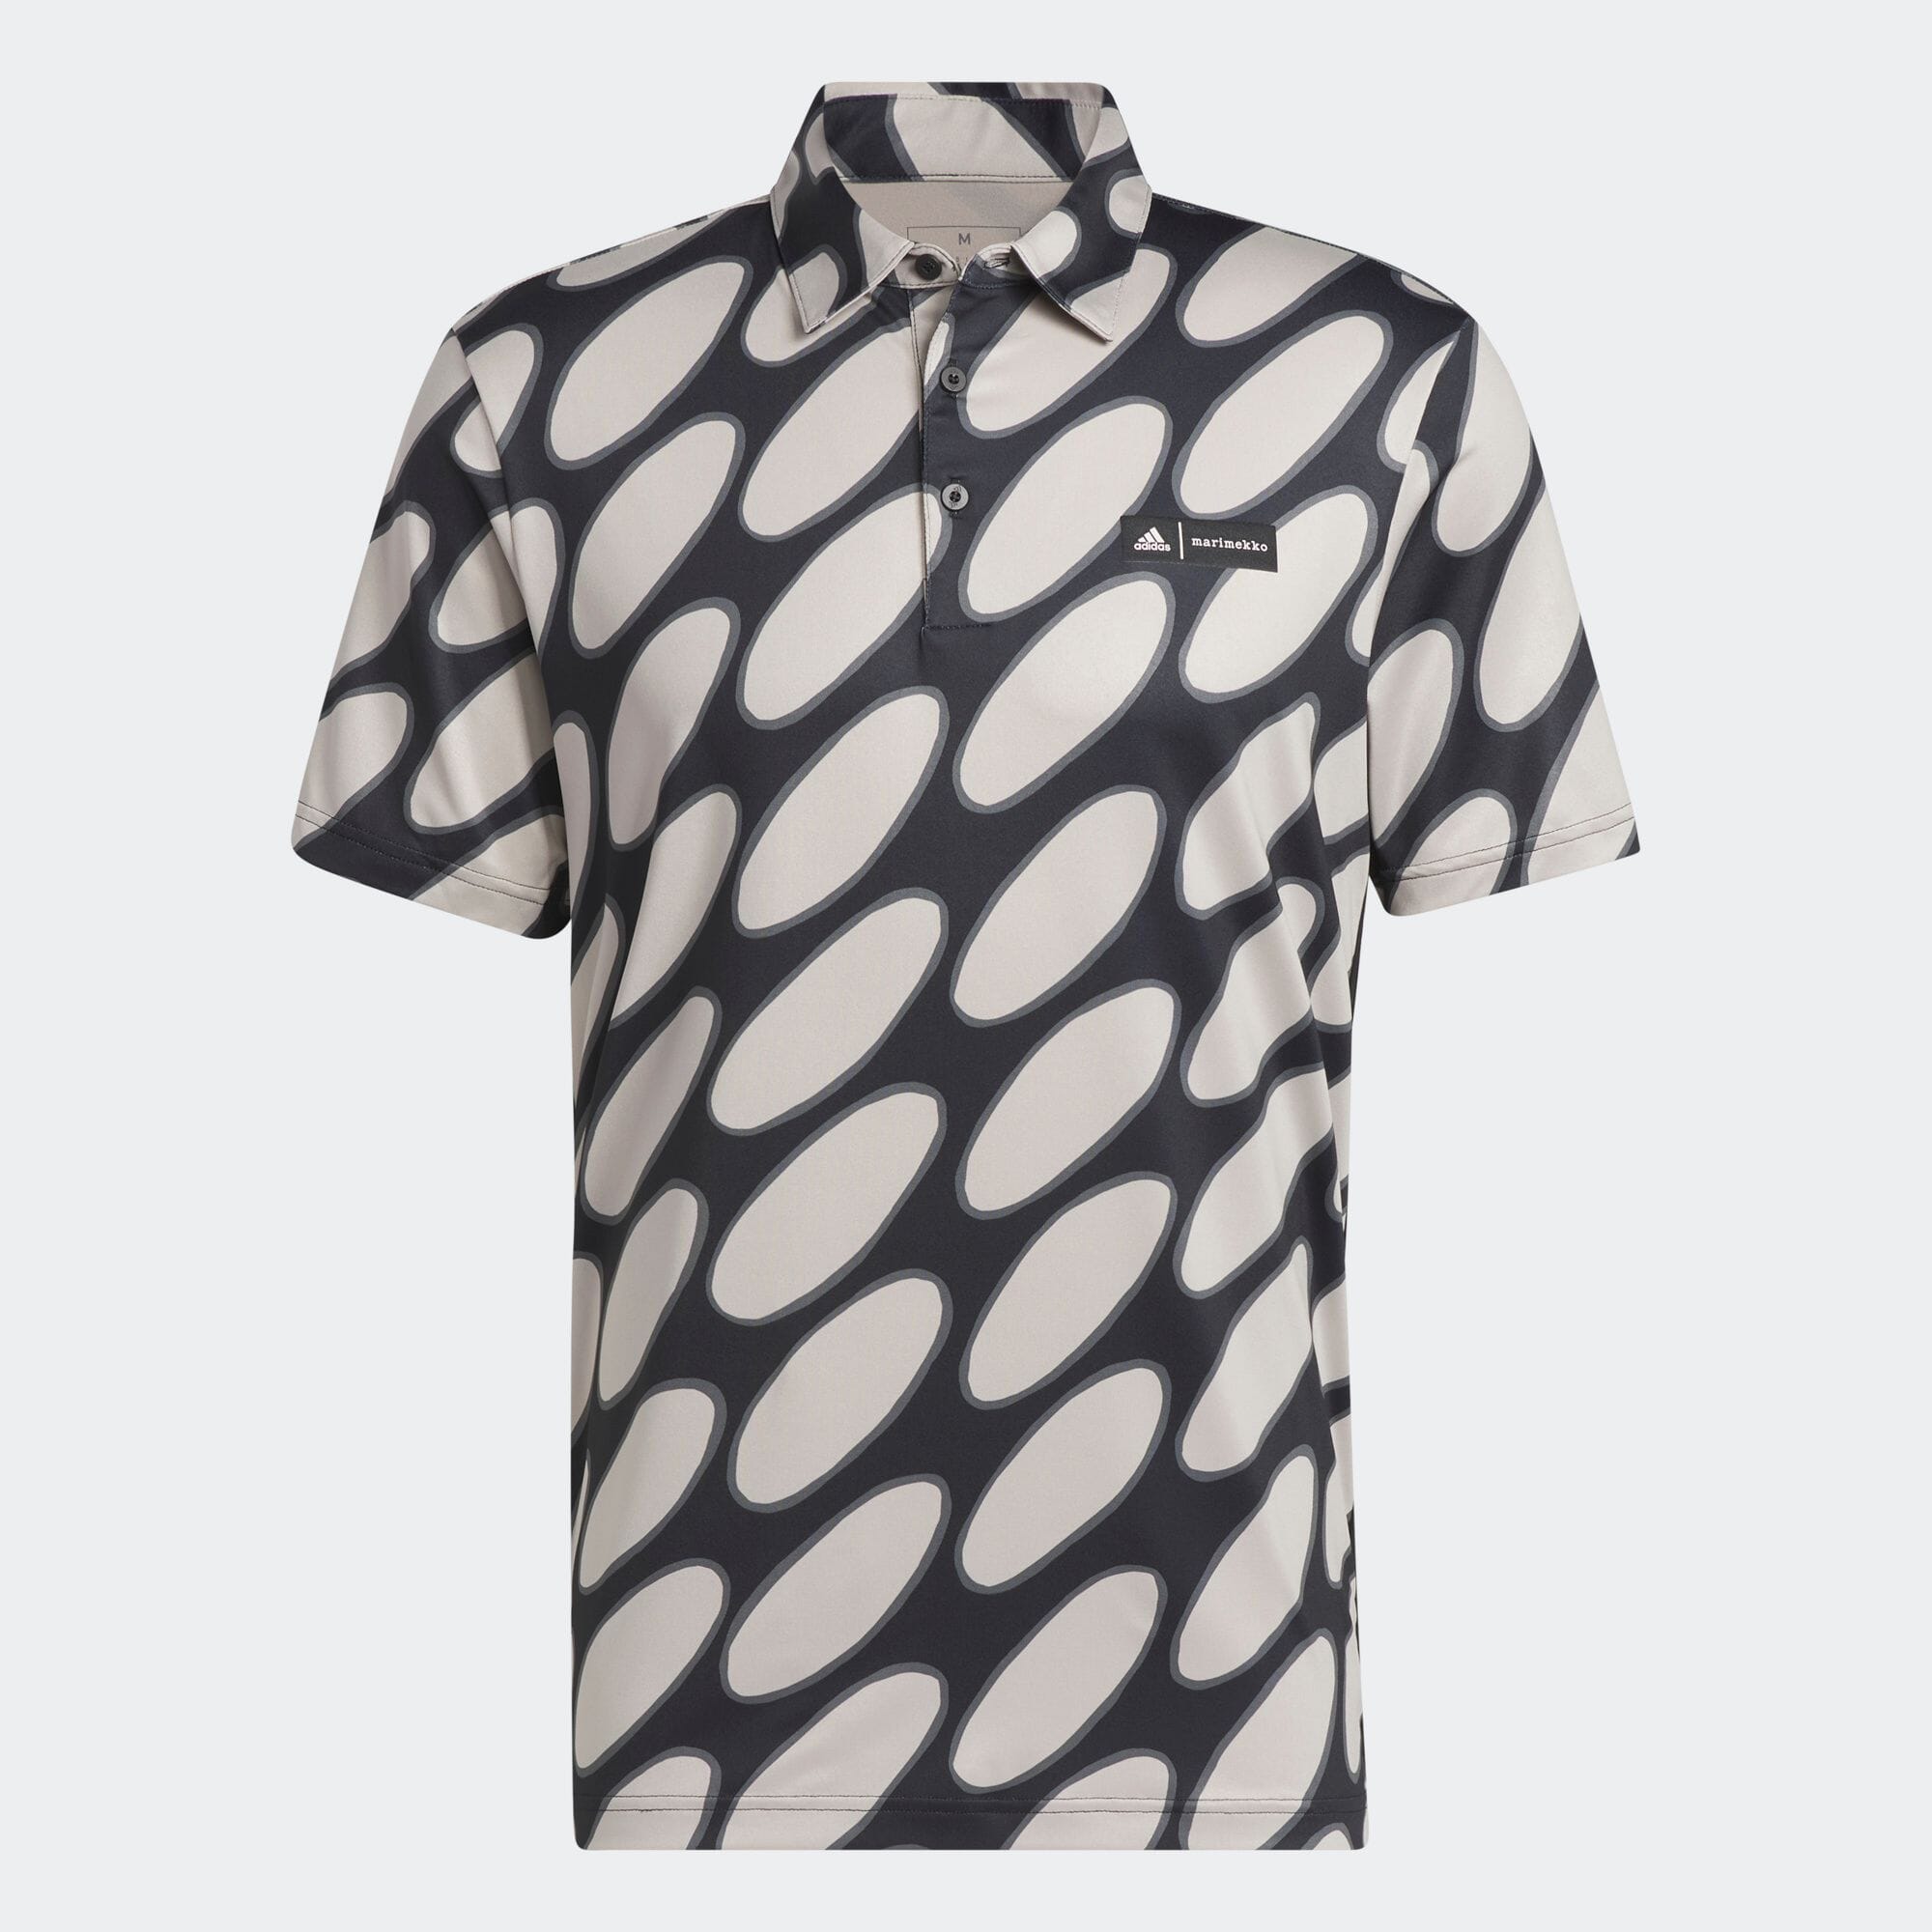 マリメッコ リンッシ柄 半袖プリントシャツ メンズ ゴルフ